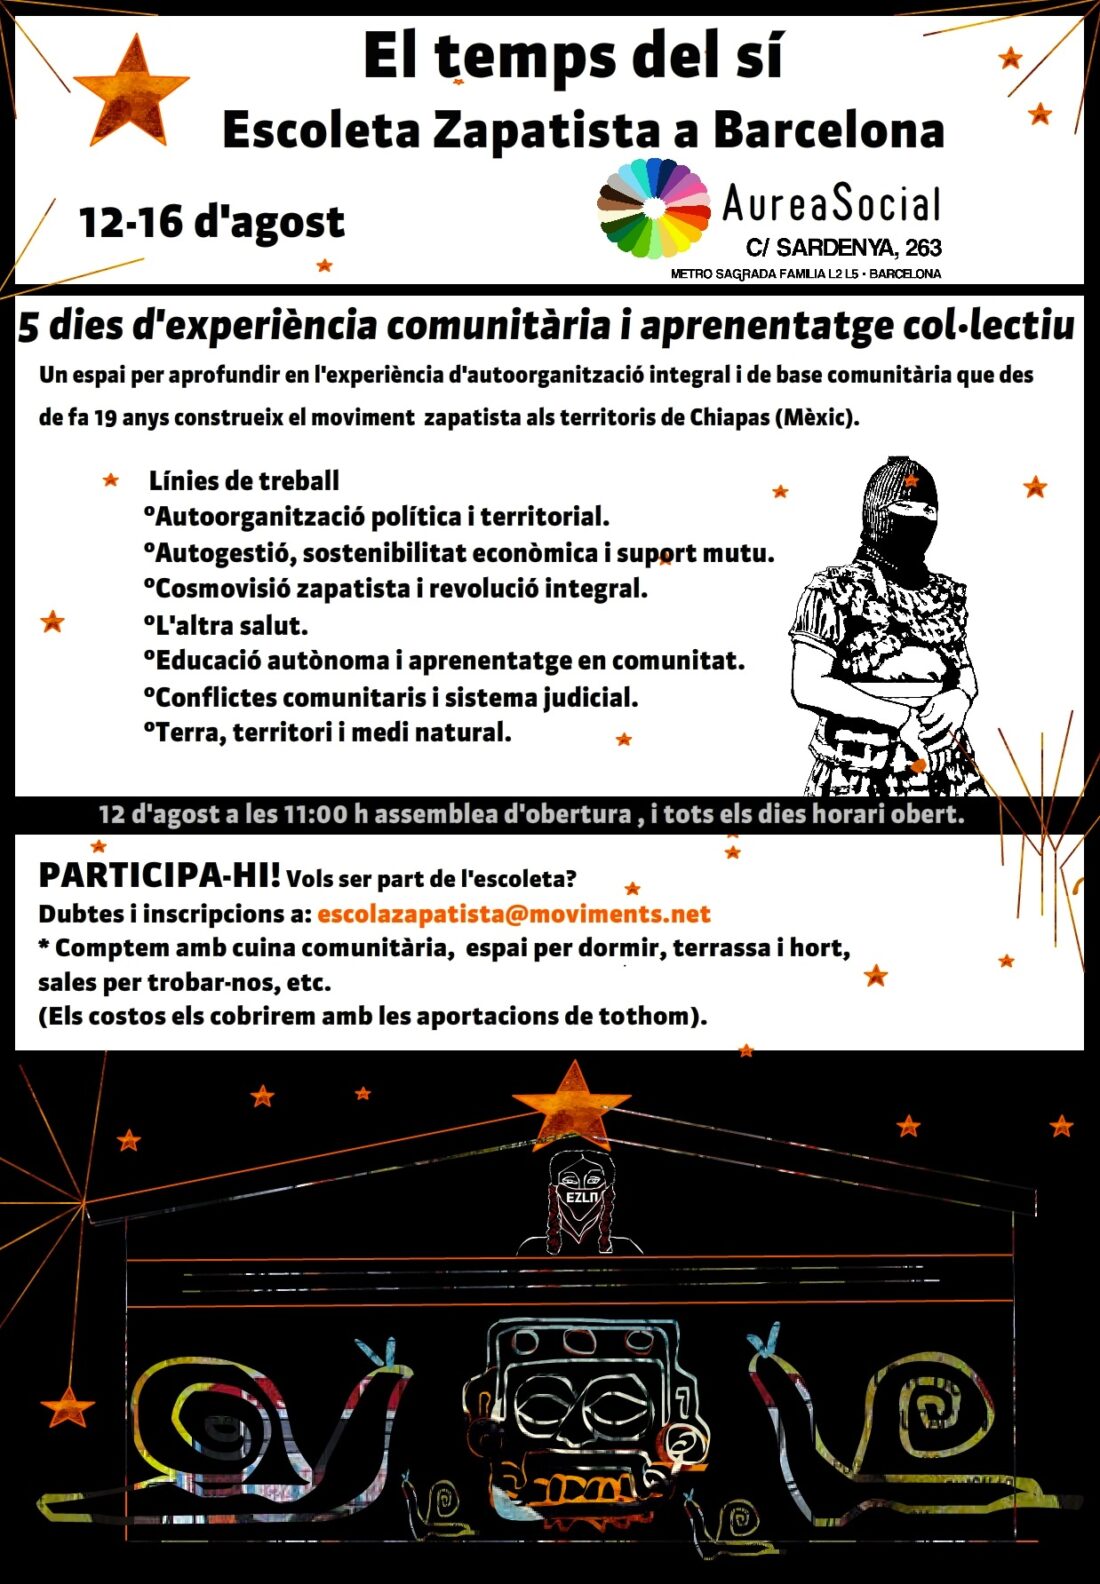 Barcelona: Escuelita Zapatista en el AureaSocial